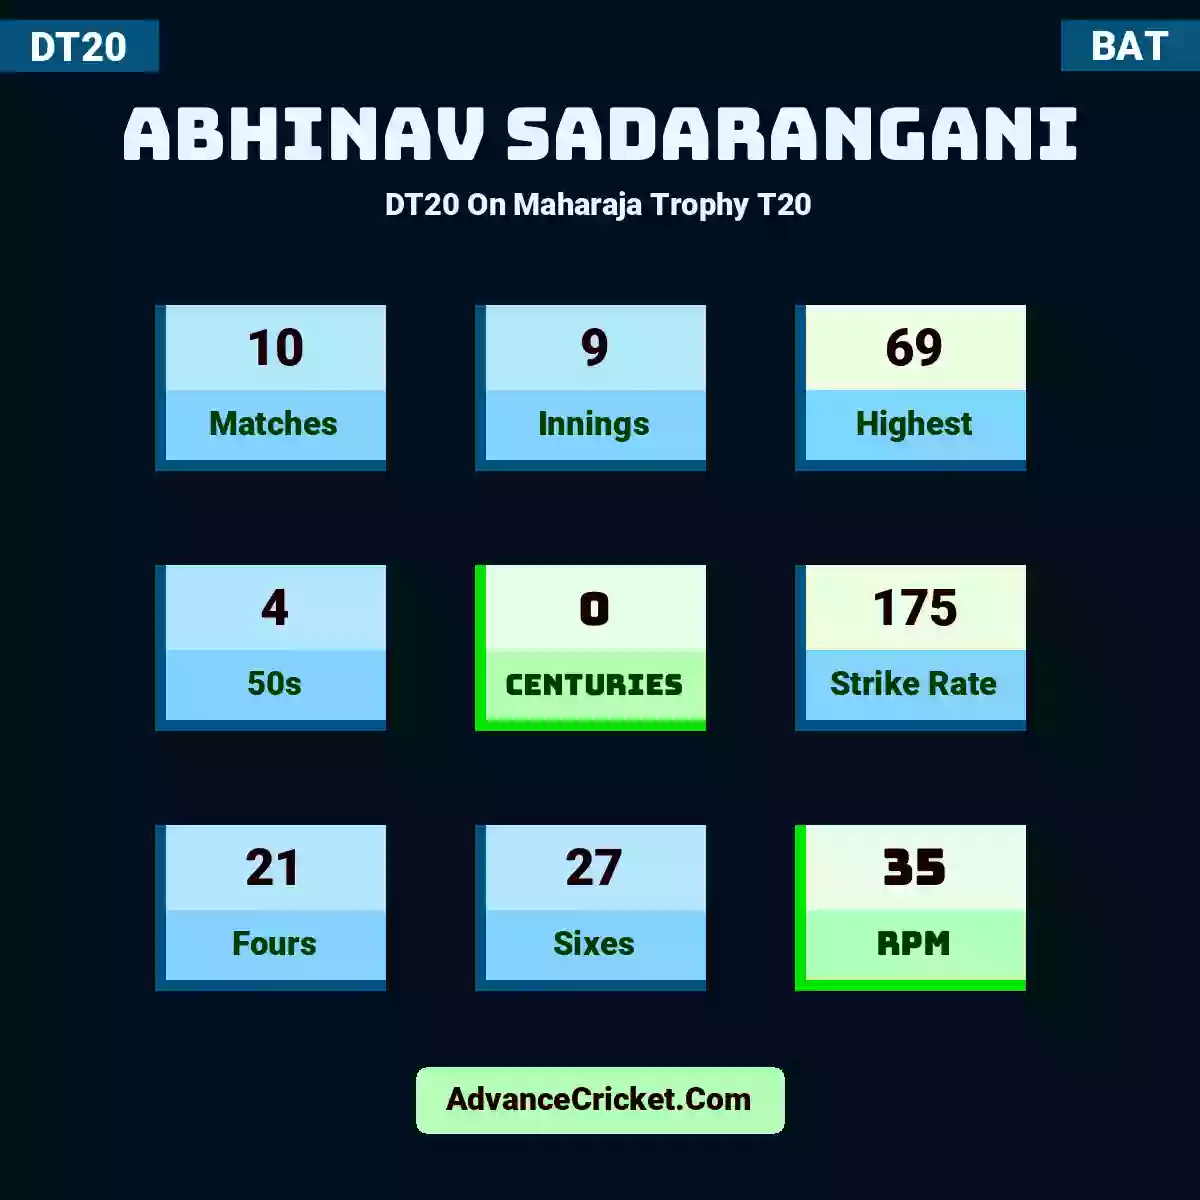 Abhinav Sadarangani DT20  On Maharaja Trophy T20, Abhinav Sadarangani played 10 matches, scored 69 runs as highest, 4 half-centuries, and 0 centuries, with a strike rate of 175. A.Sadarangani hit 21 fours and 27 sixes, with an RPM of 35.